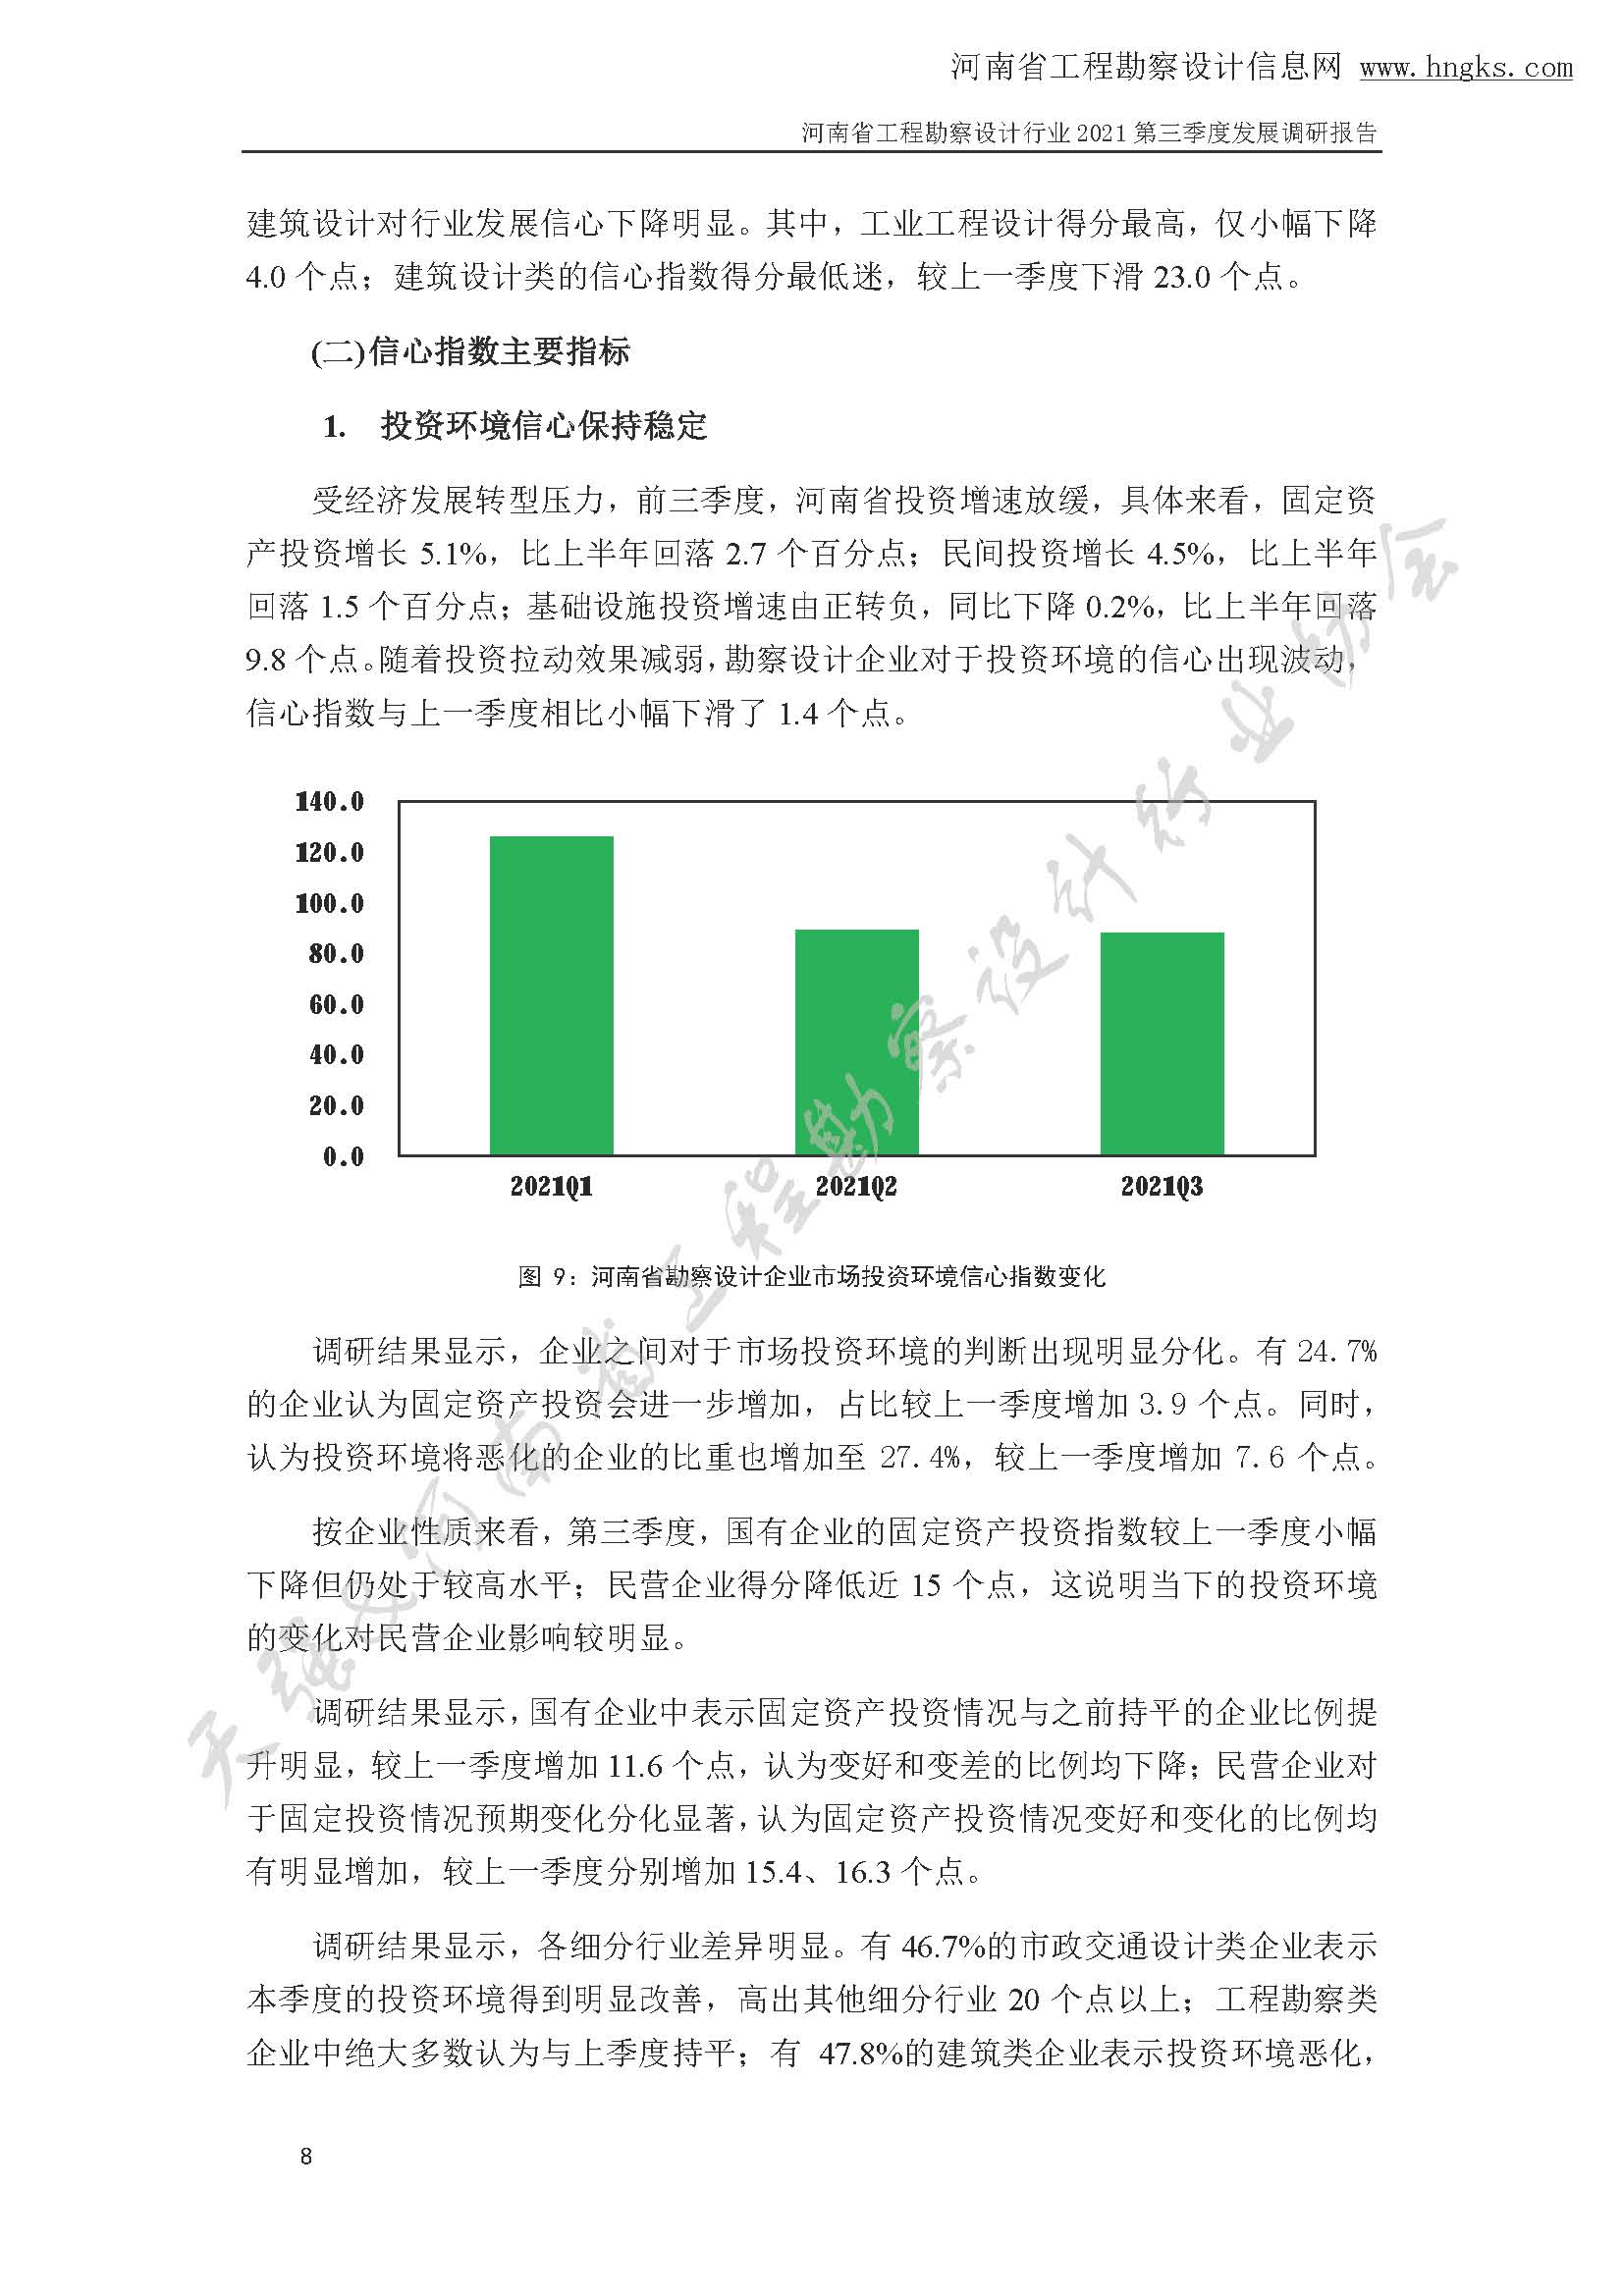 河南省工程勘察设计企业2021年第三季度发展调研报告-公开版_页面_11.jpg